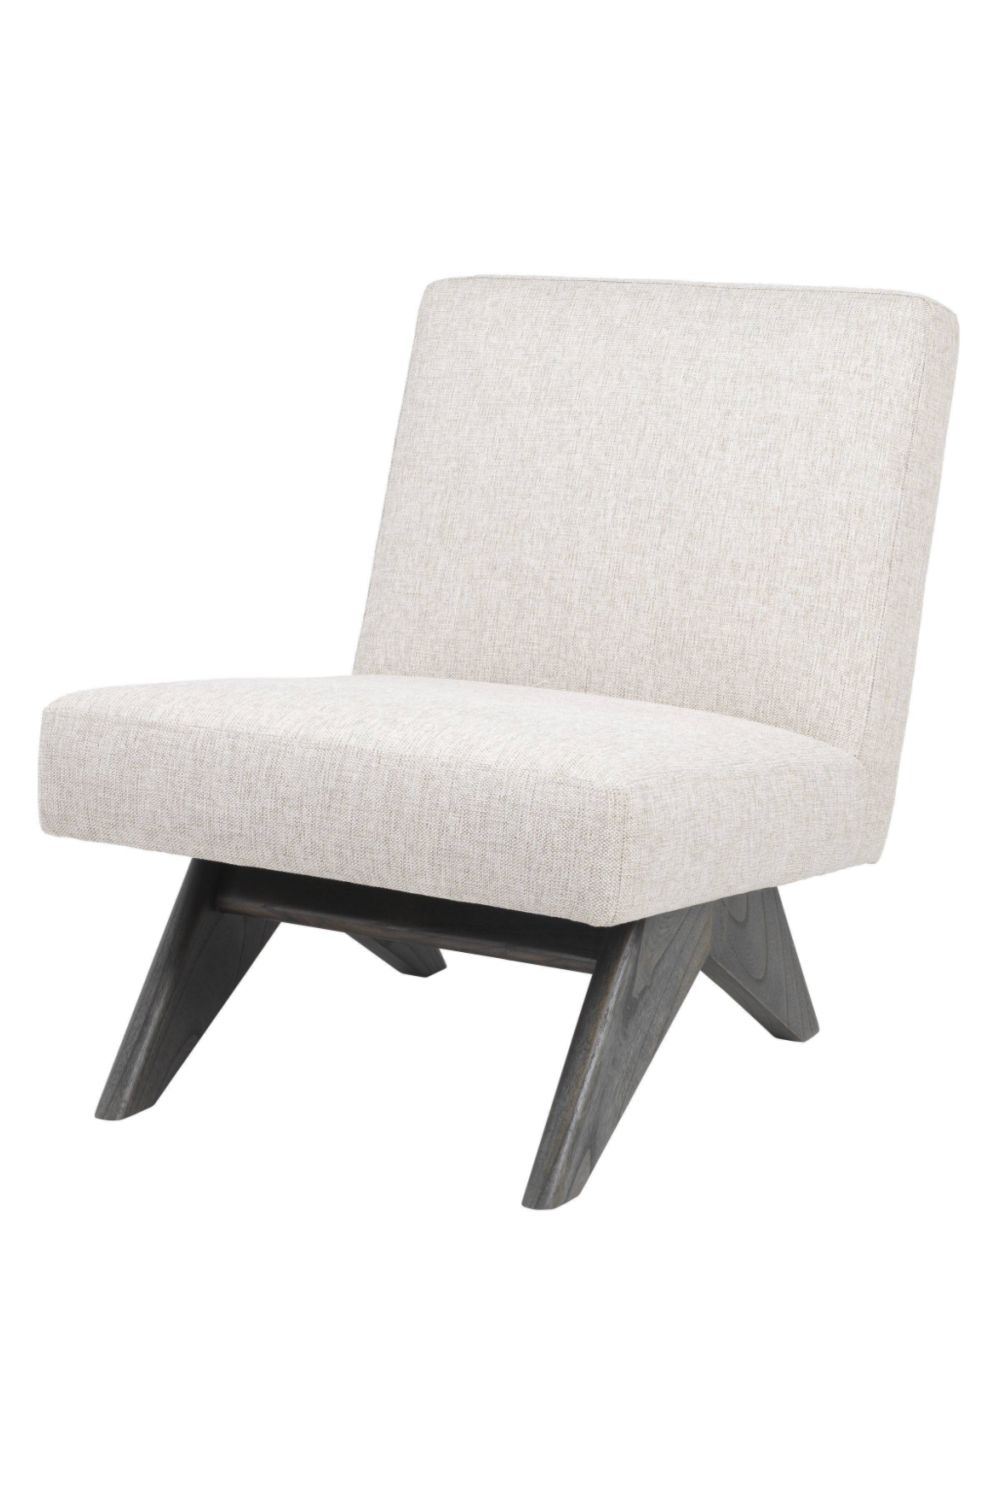 Beige Wooden Accent Chair | Eichholtz Erudit | Oroa.com